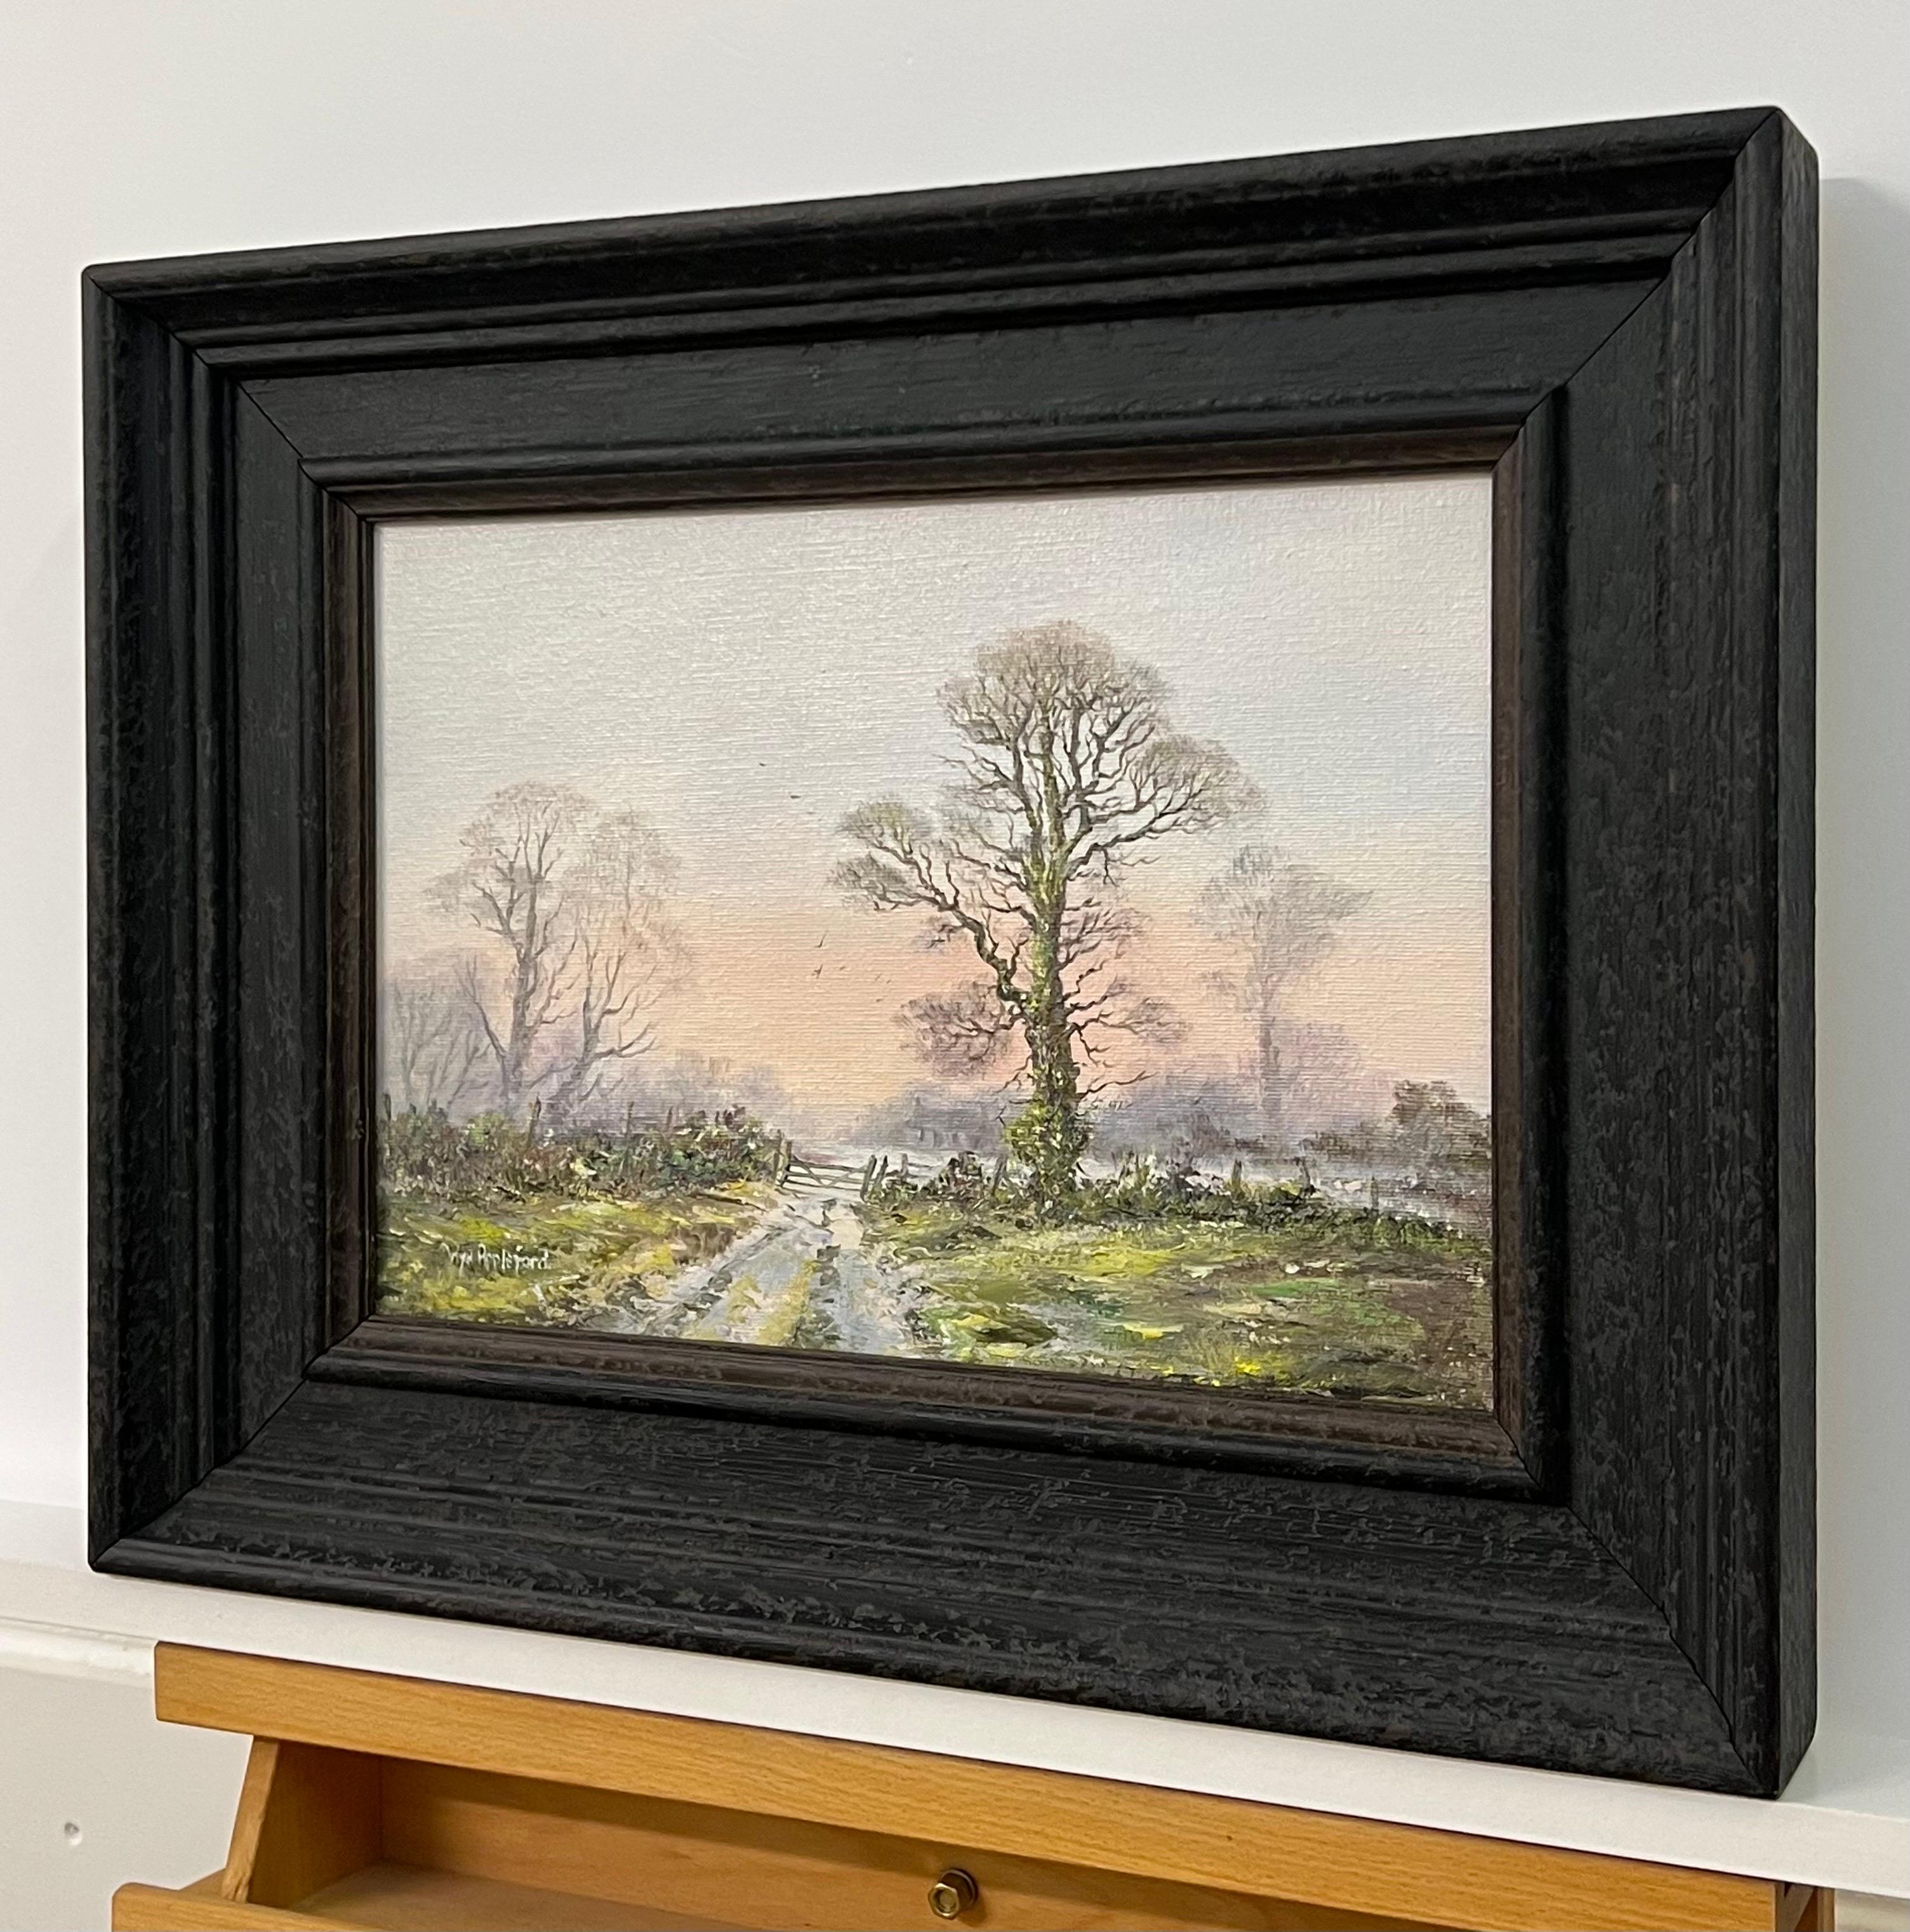 Chemin de ferme dans un paysage boisé avec du rose et du vert par l'artiste britannique du 20e siècle, Wyn Appleford (britannique, 1932-2020). Présenté dans une moulure en bois noir de haute qualité. Signé en bas à gauche. Huile sur toile. 

L'œuvre